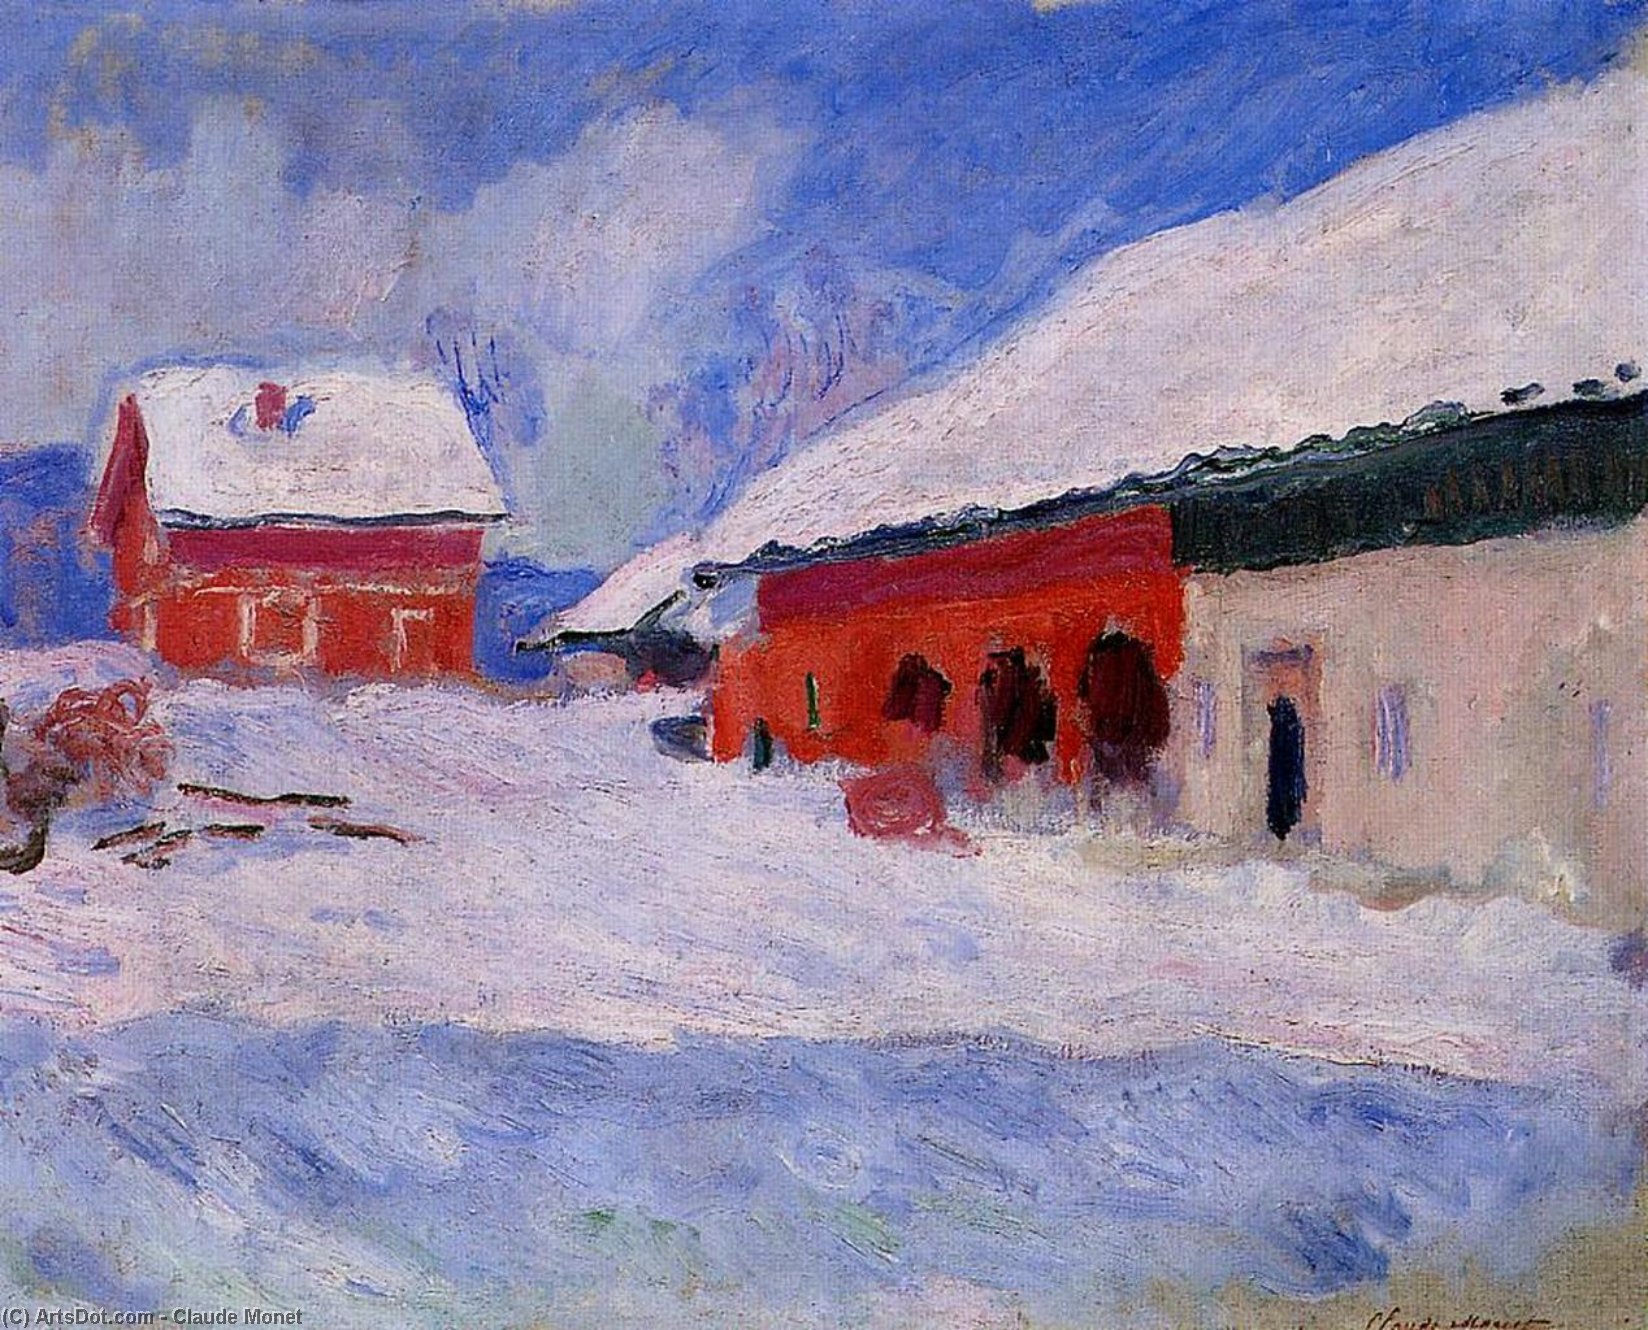 Ordinare Riproduzioni Di Quadri Case rosse a Bjornegaard nella neve, Norvegia, 1895 di Claude Monet (1840-1926, France) | ArtsDot.com